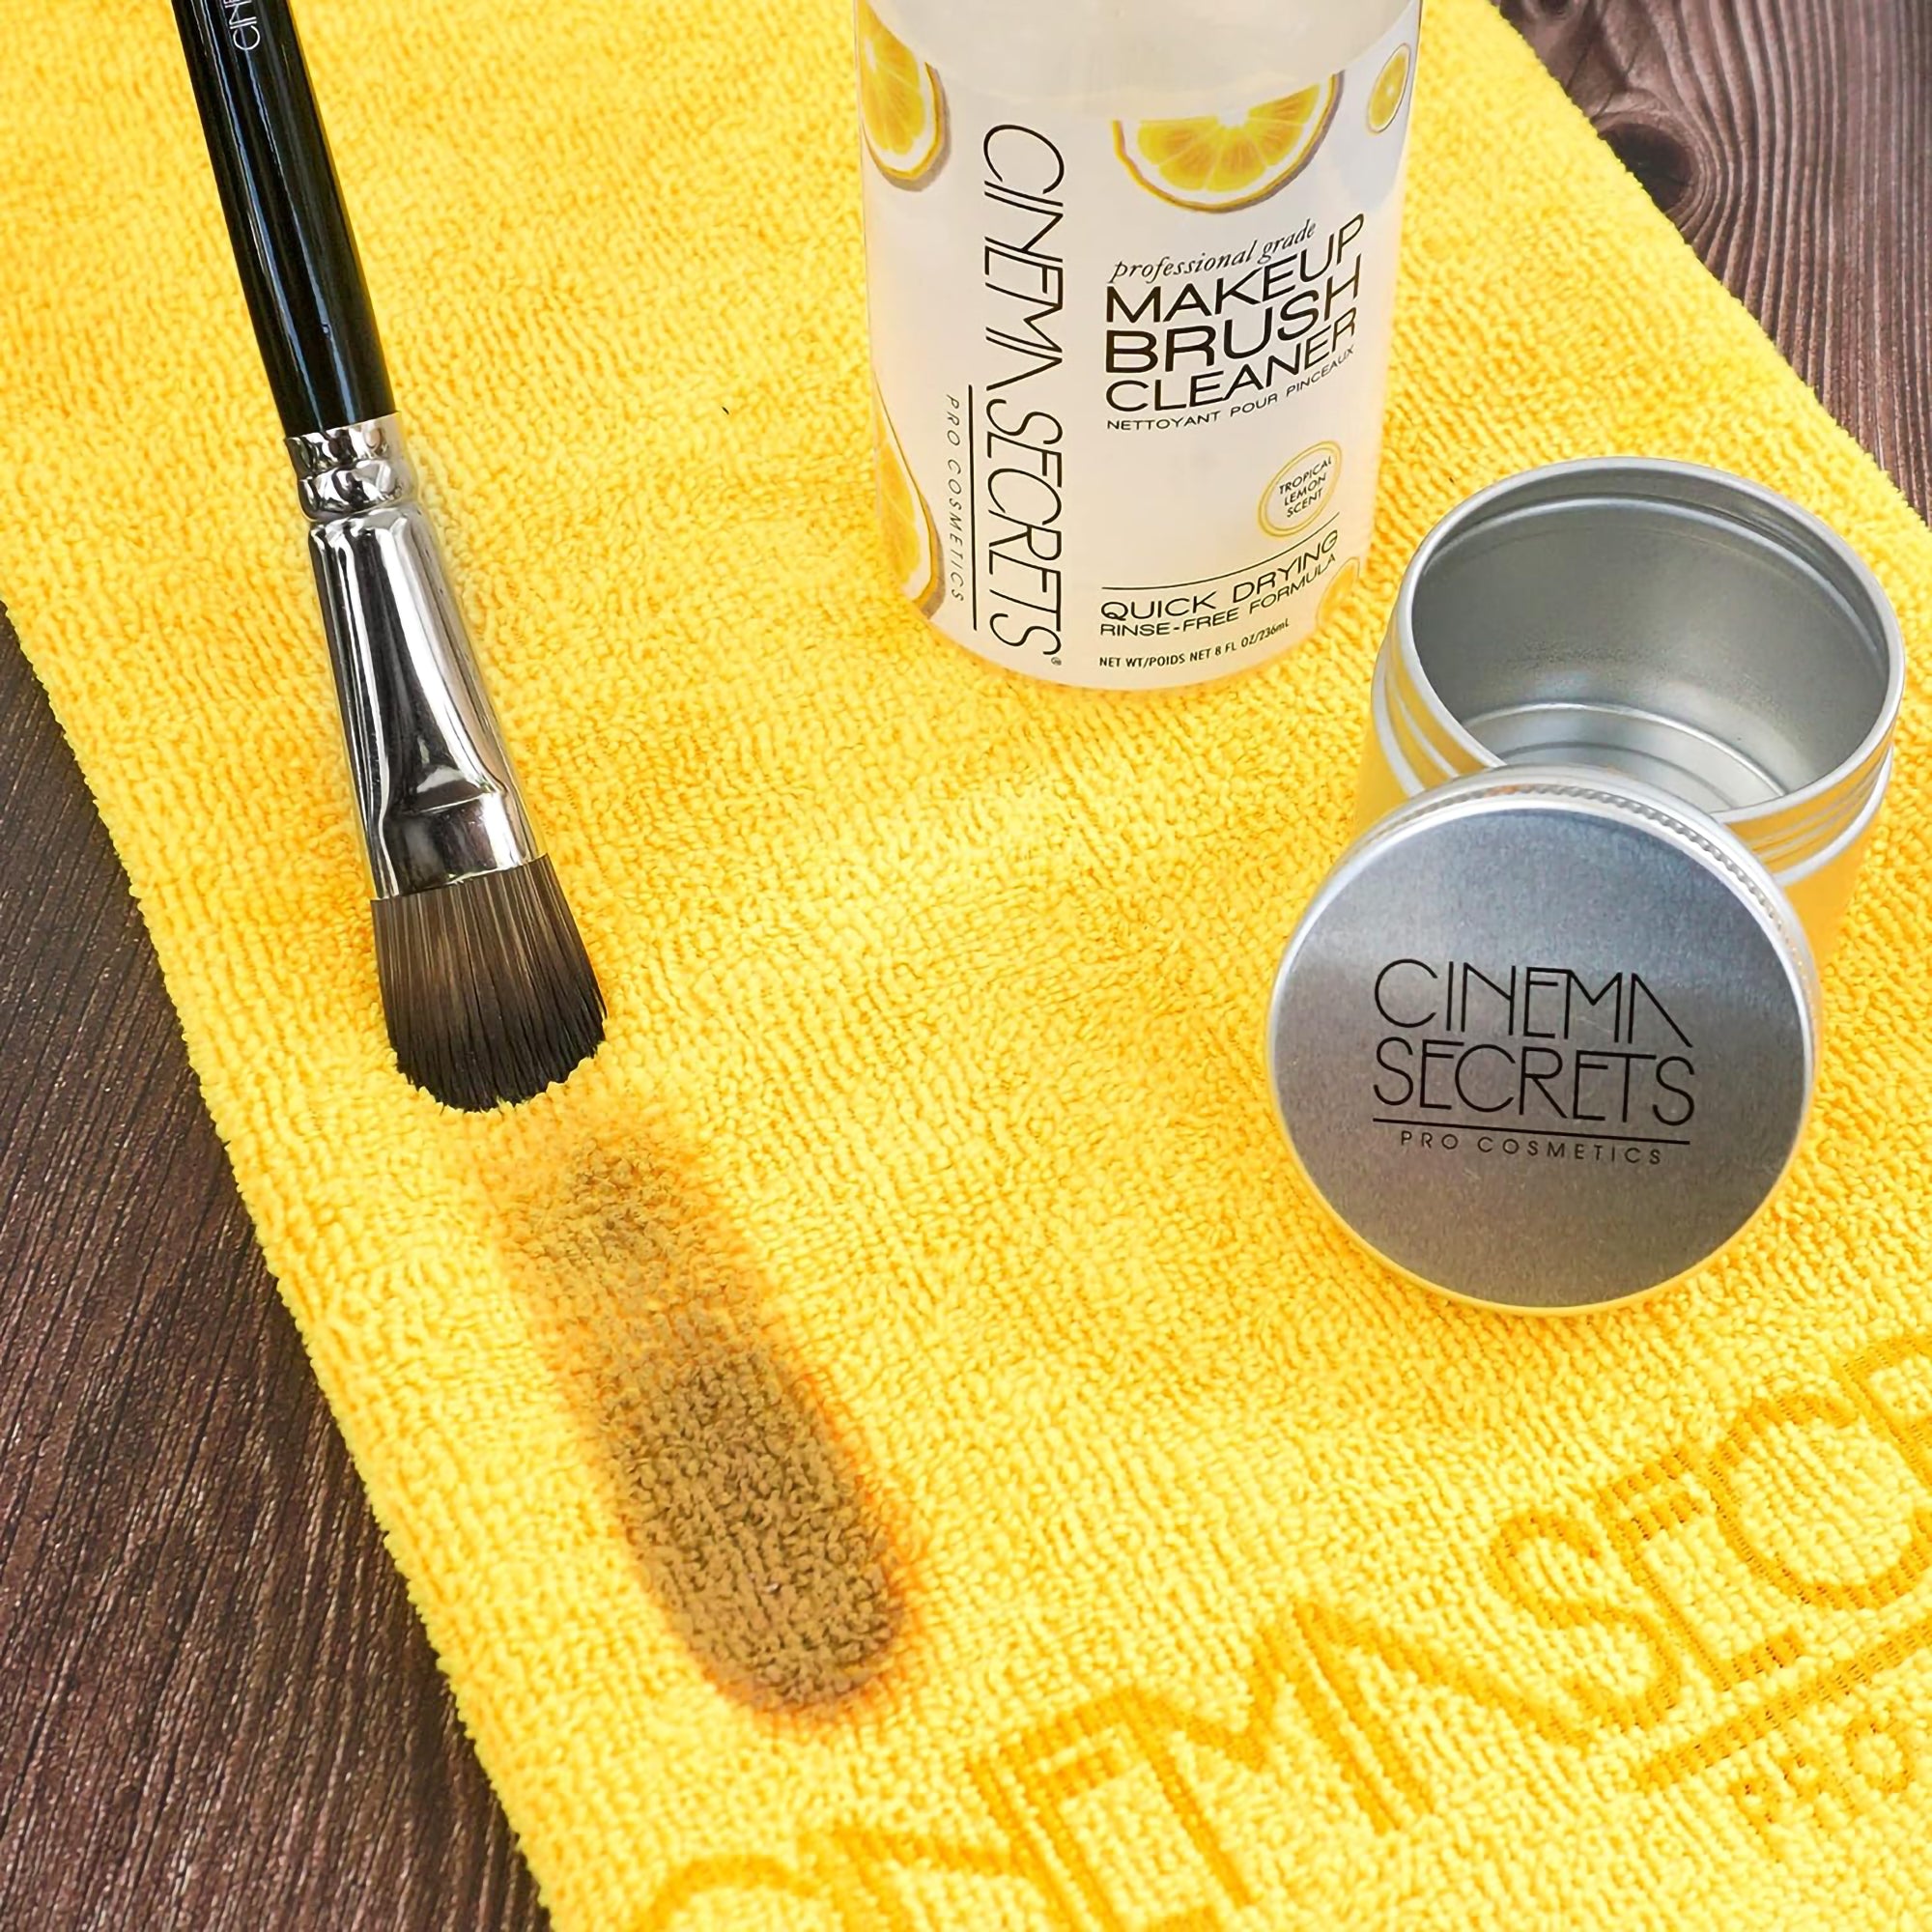 Cinema Secrets Makeup Brush Cleaner - Lemon Scented / 32OZ